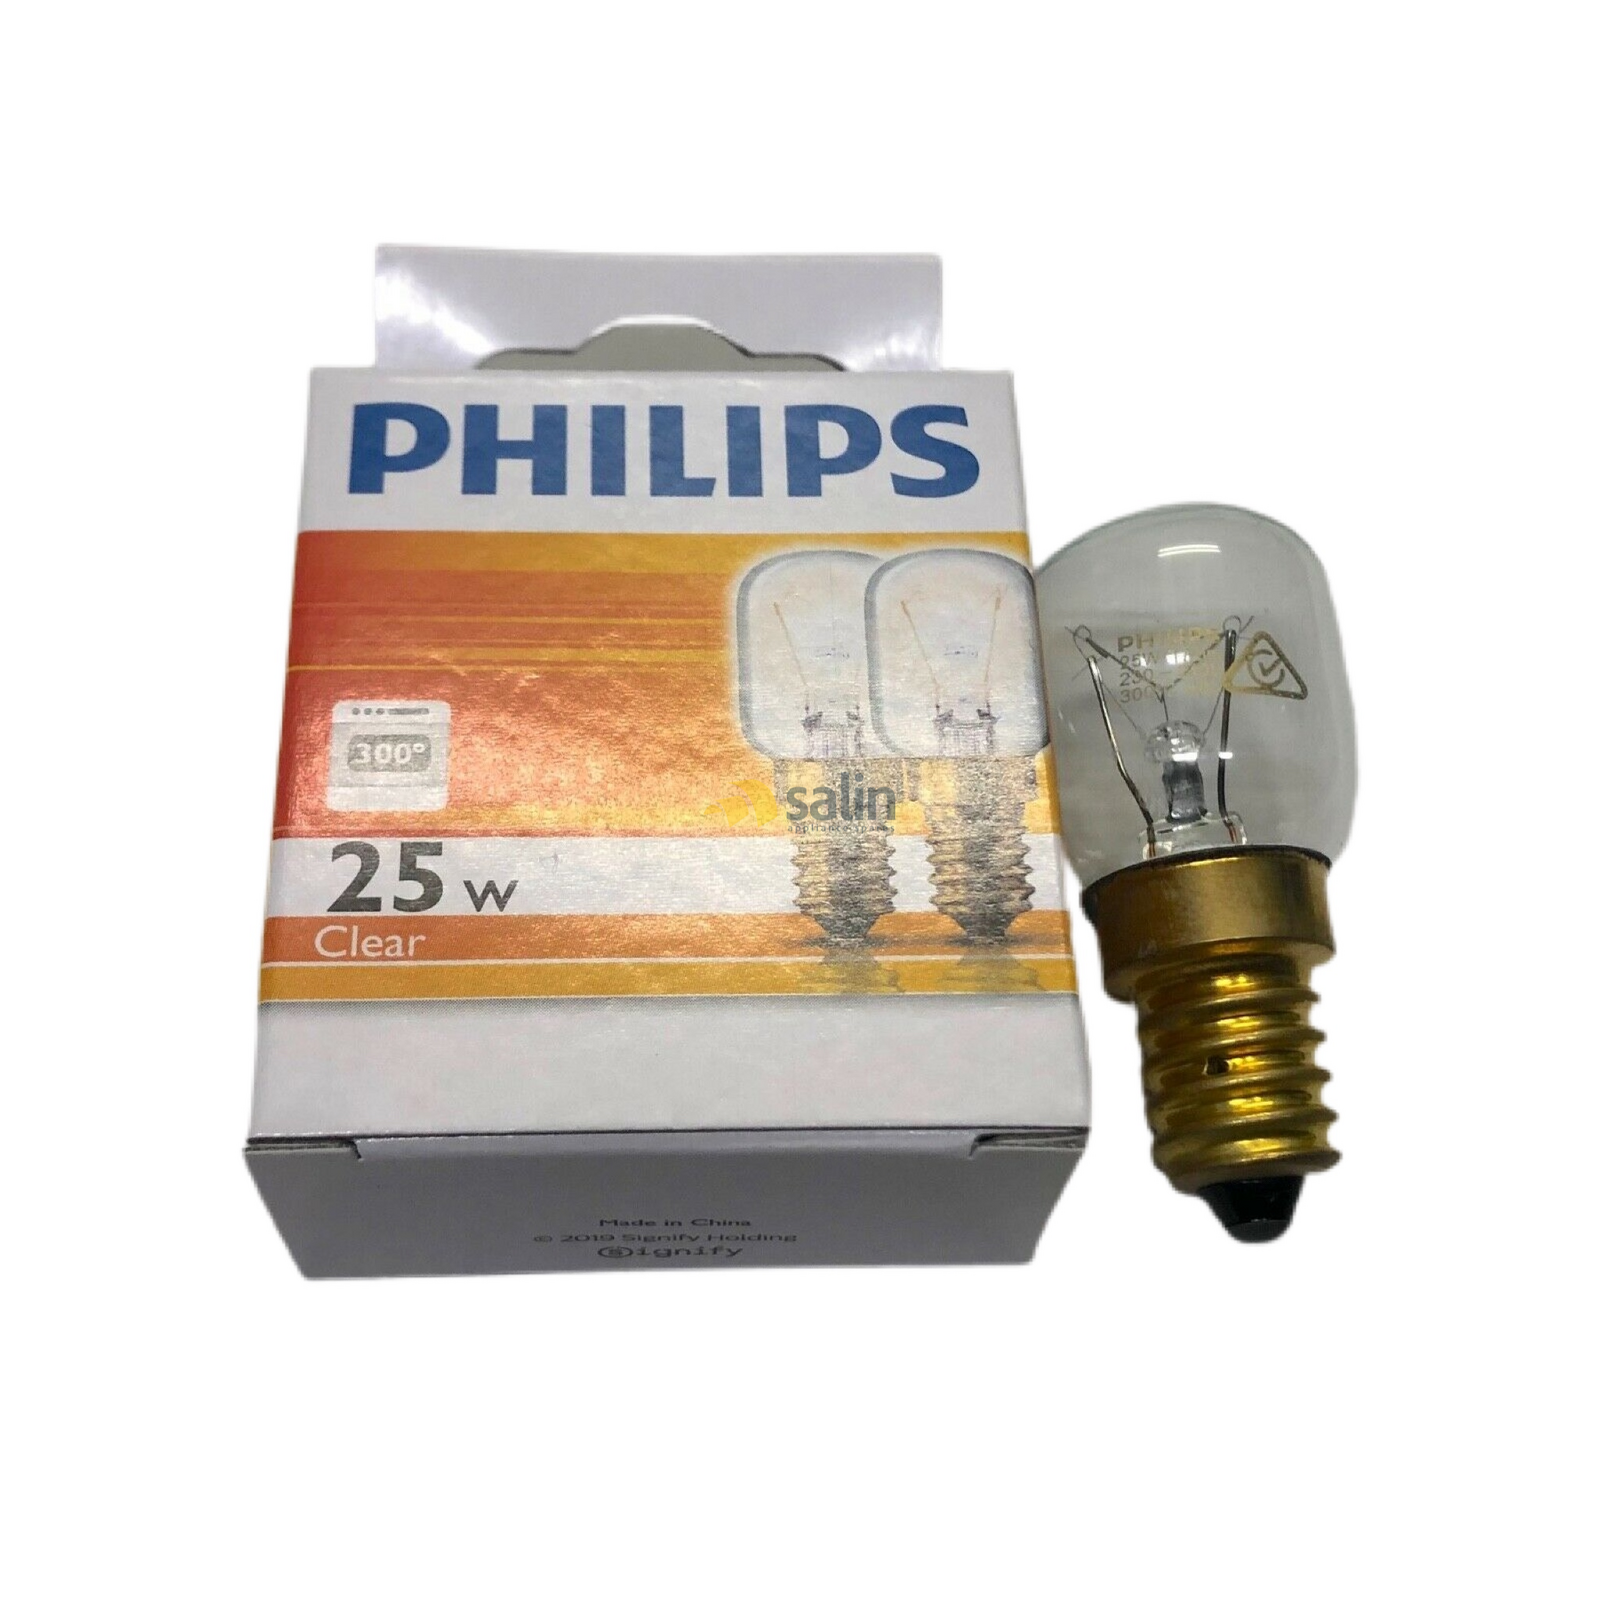 Westinghouse Boss 668 Oven Lamp Light Bulb Globe POP668S POP668S*02